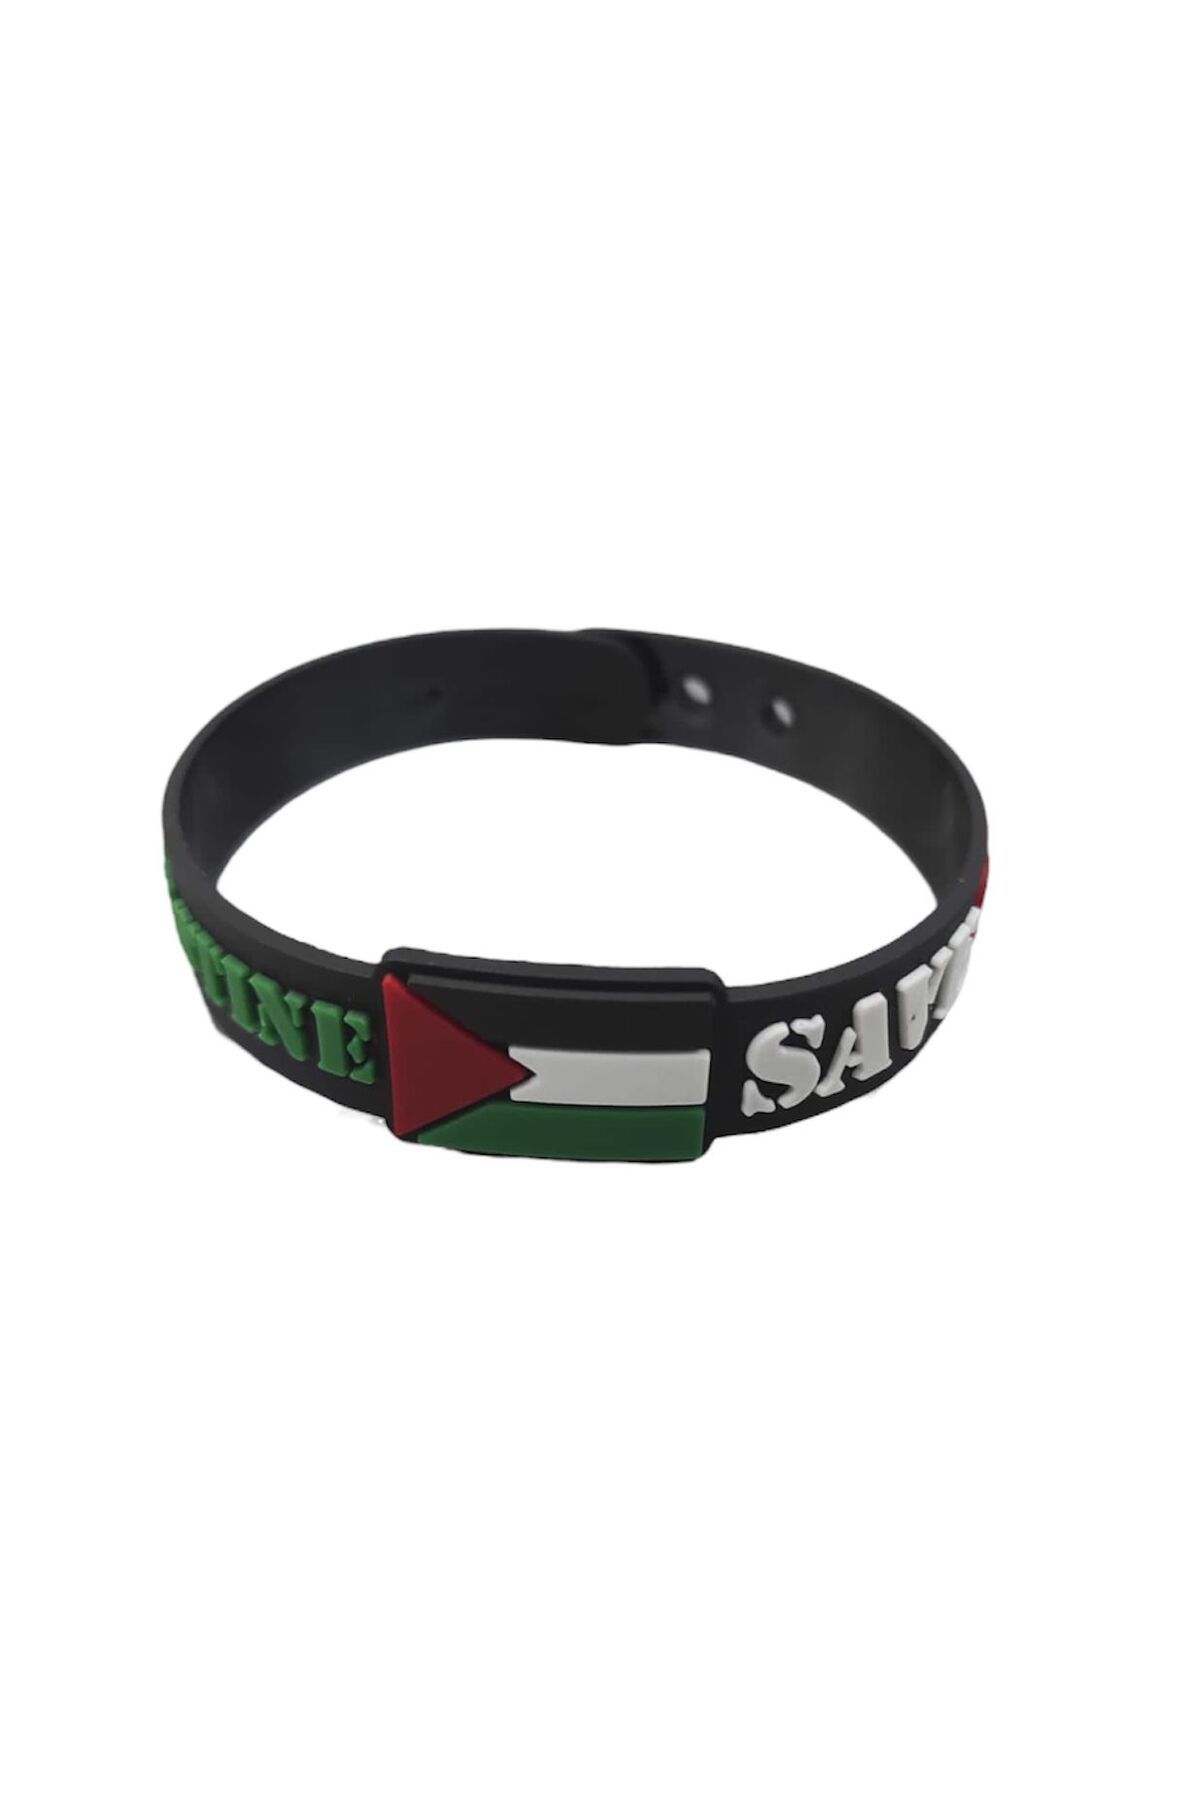 Bronza Özgür Filistin - Free Palestine Bilekliği